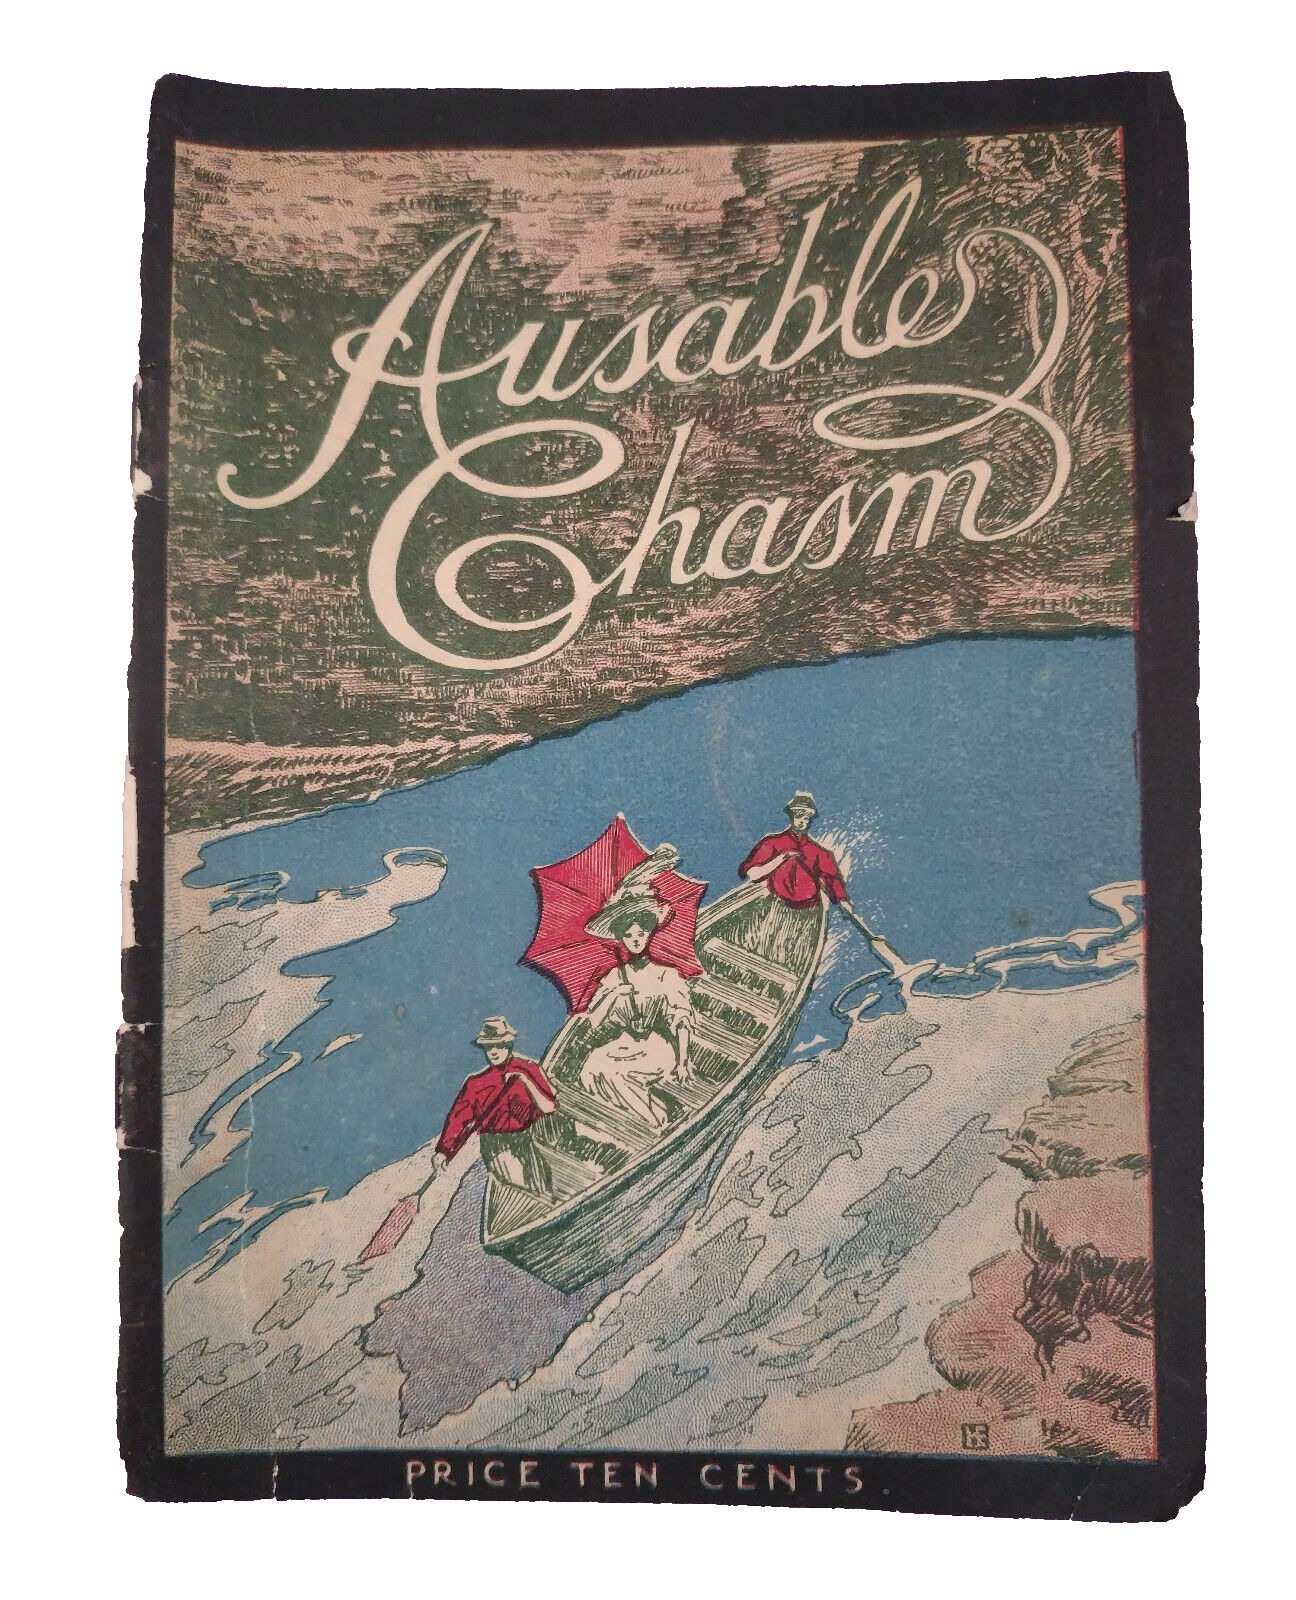 Ausable Chasm Circa Early 1900s NY Adirondacks Souvenir Photo Album VTG Robinson